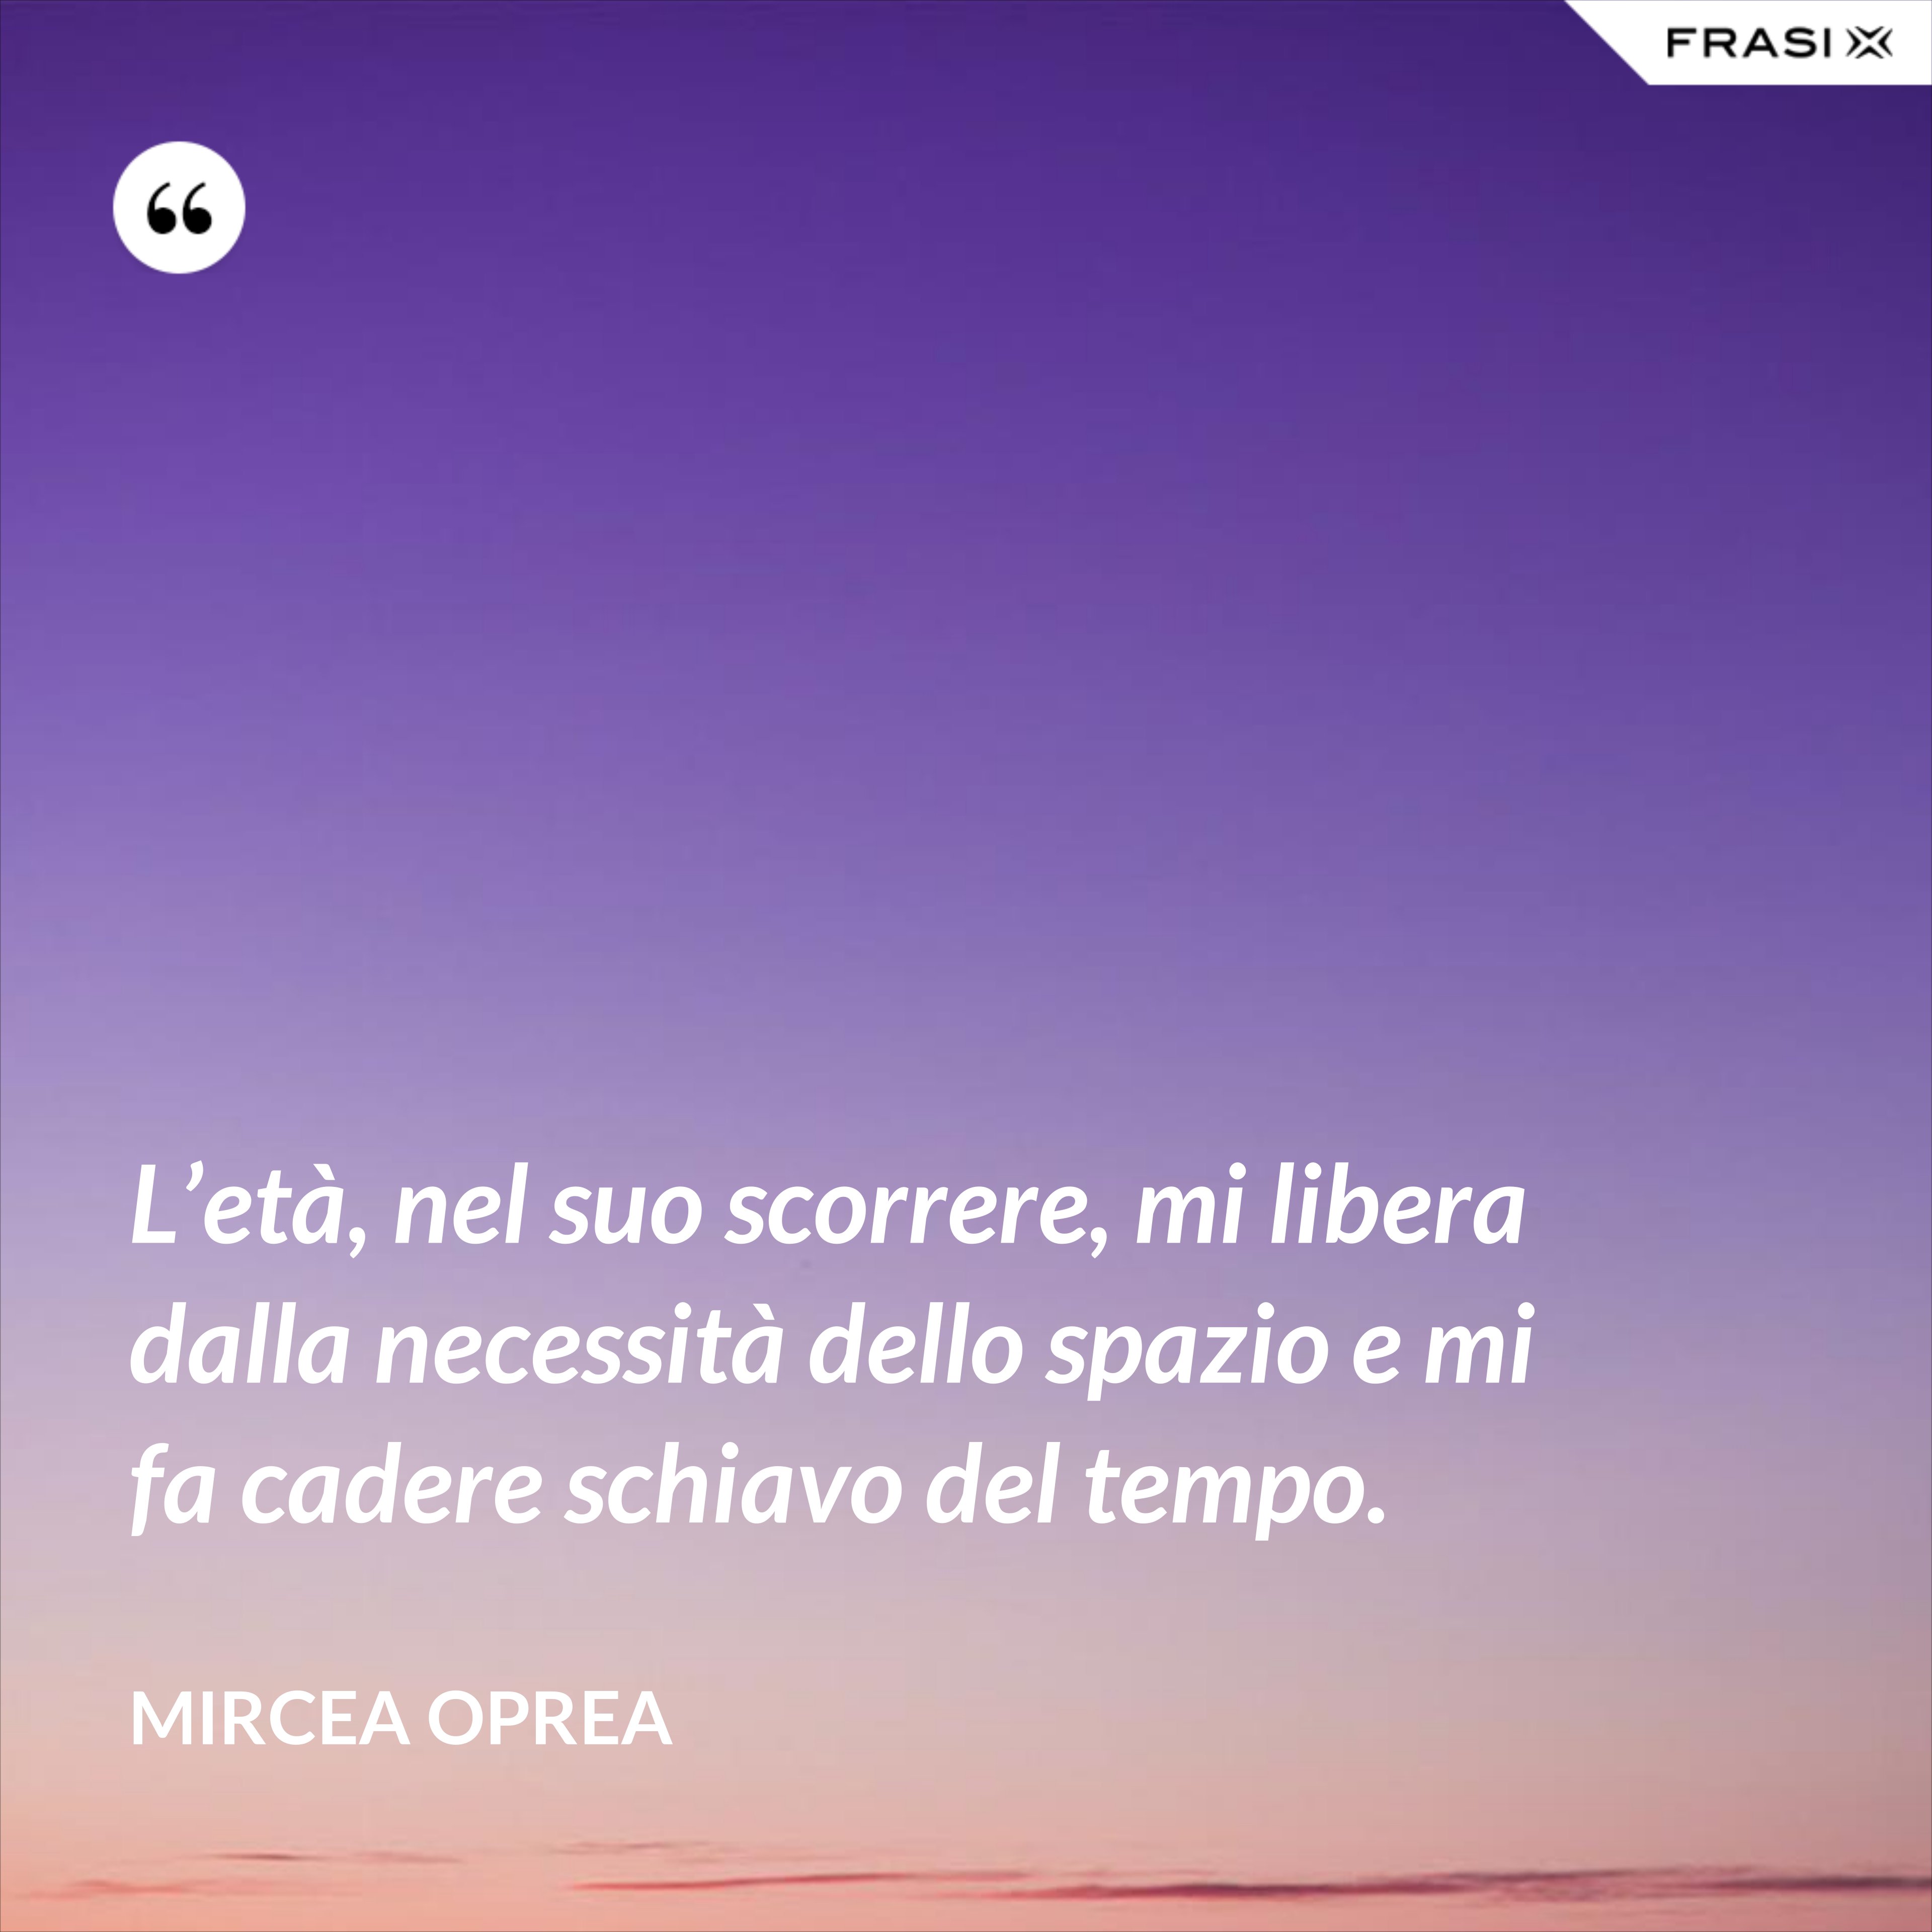 L’età, nel suo scorrere, mi libera dalla necessità dello spazio e mi fa cadere schiavo del tempo. - Mircea Oprea